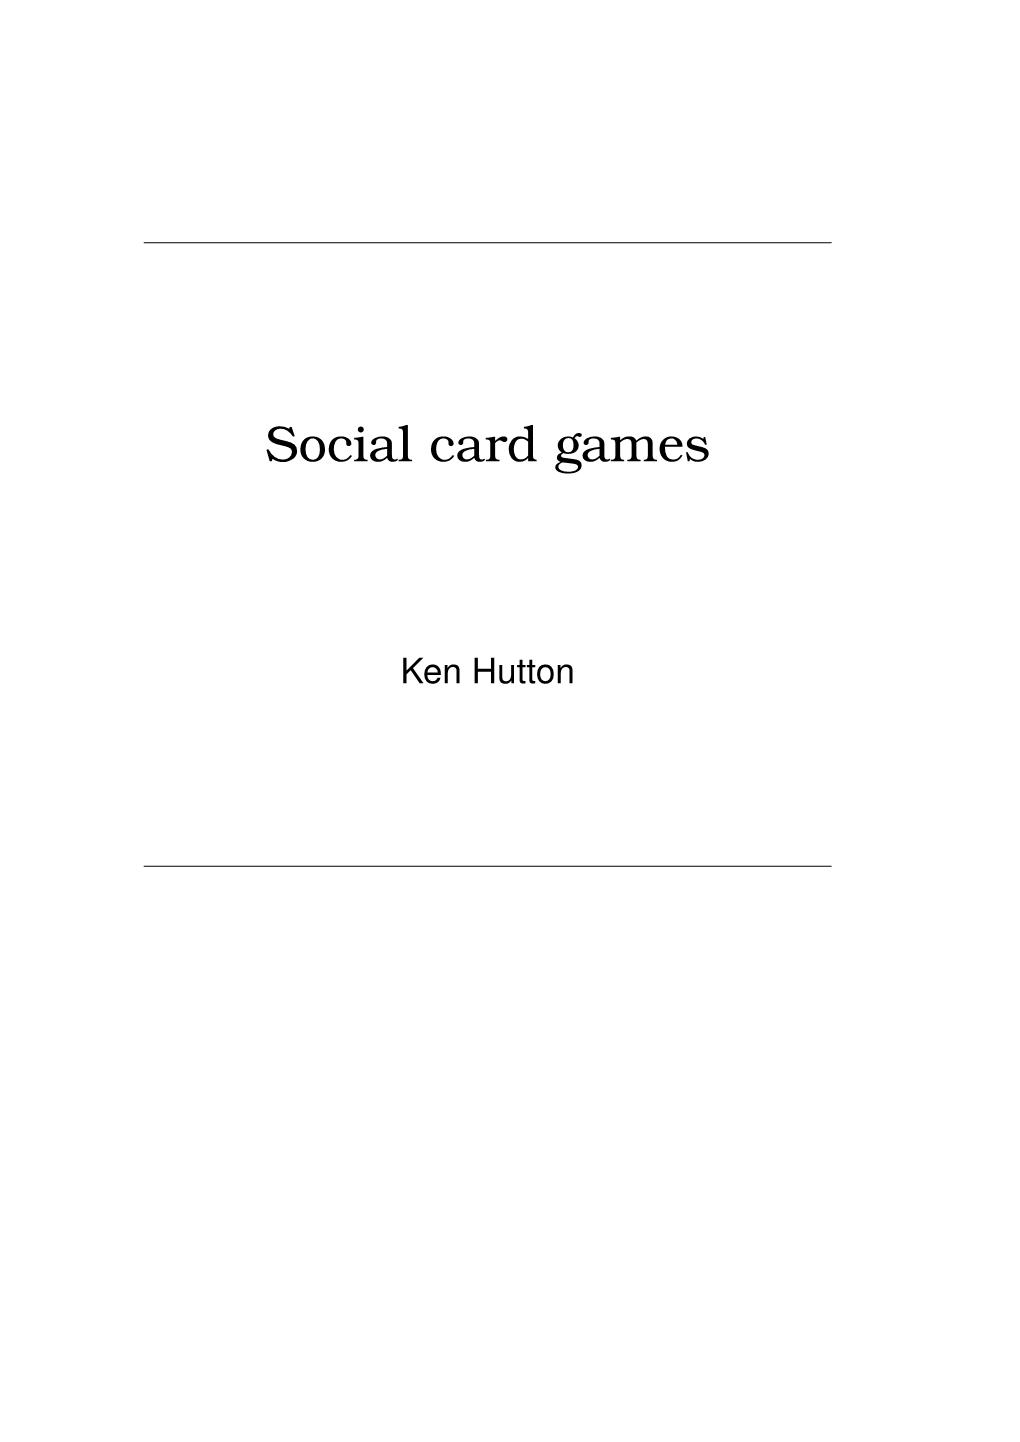 Social Card Games Sample